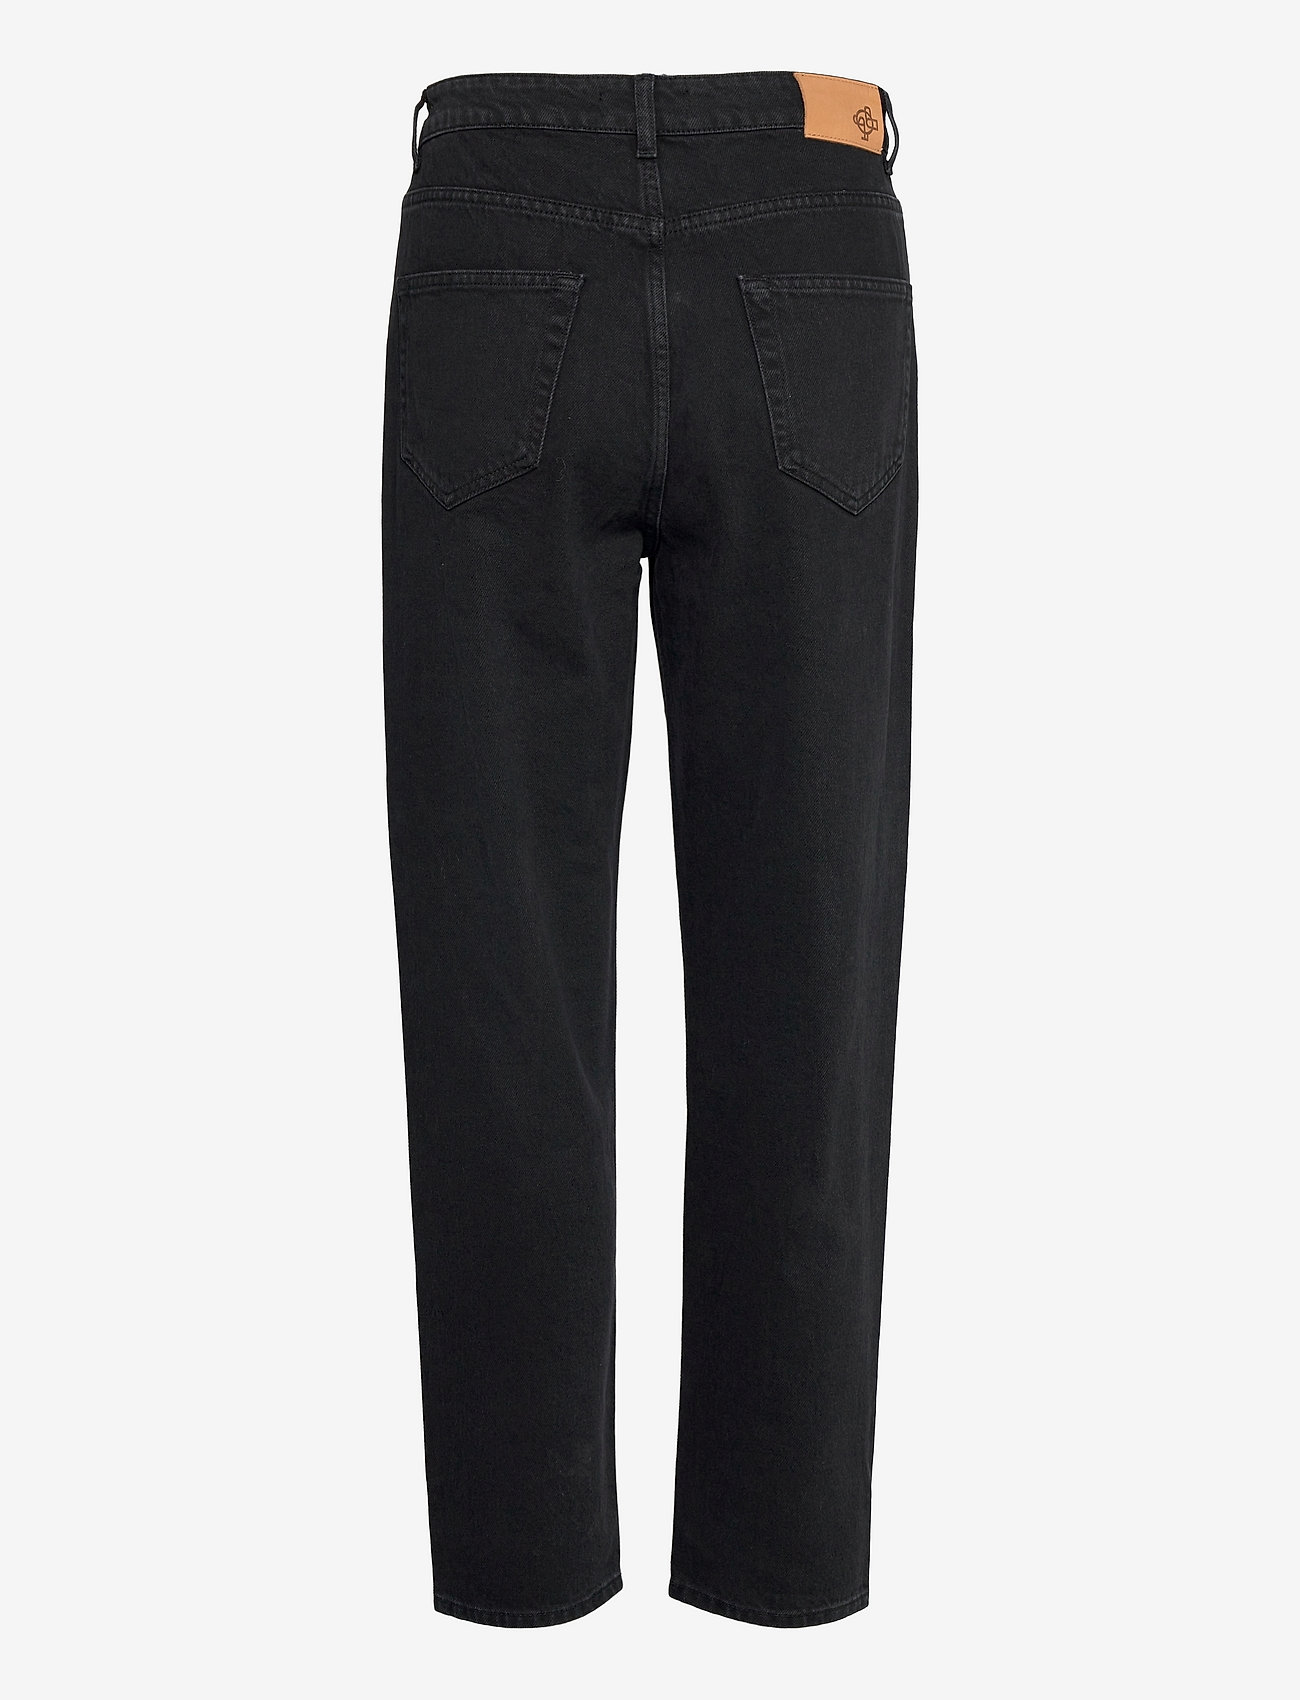 Just Female - Stormy jeans 0108 - tiesaus kirpimo džinsai - grey - 1